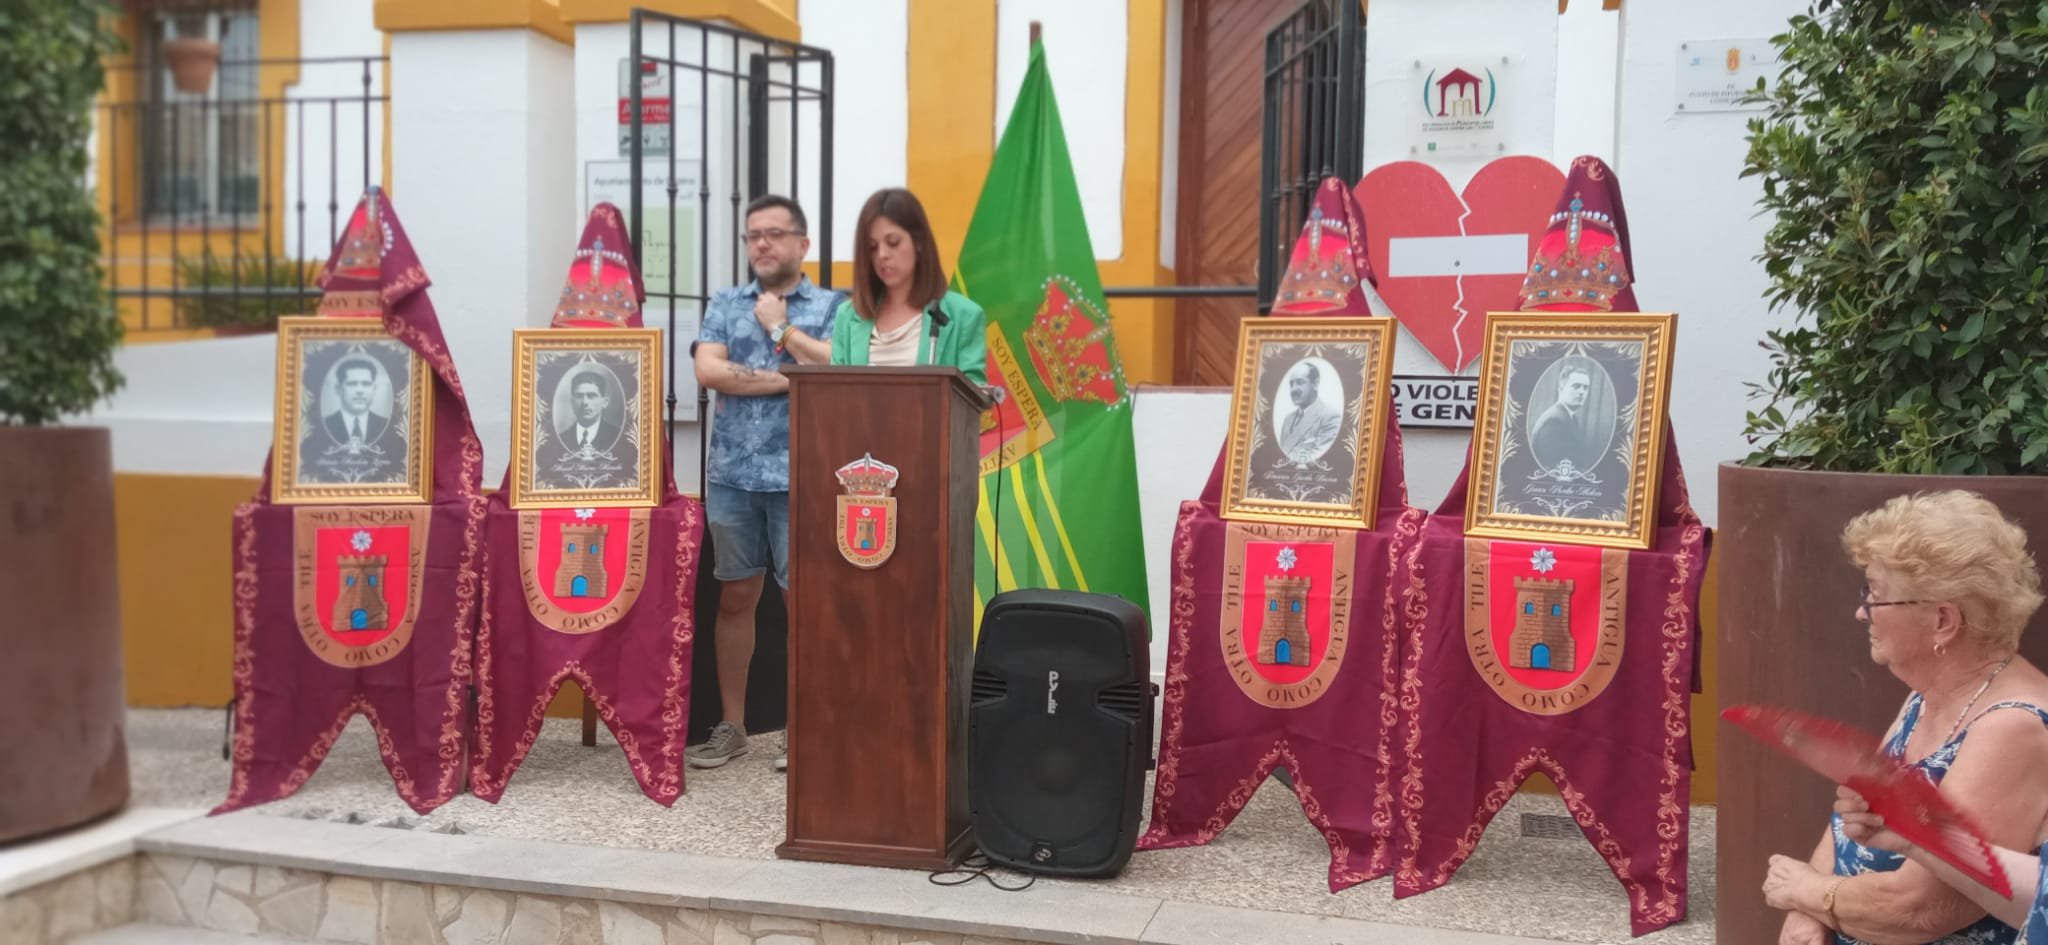 La alcaldesa de Espera, Tamara Loxsno, y el concejal de Cultura, José María Sánchez.